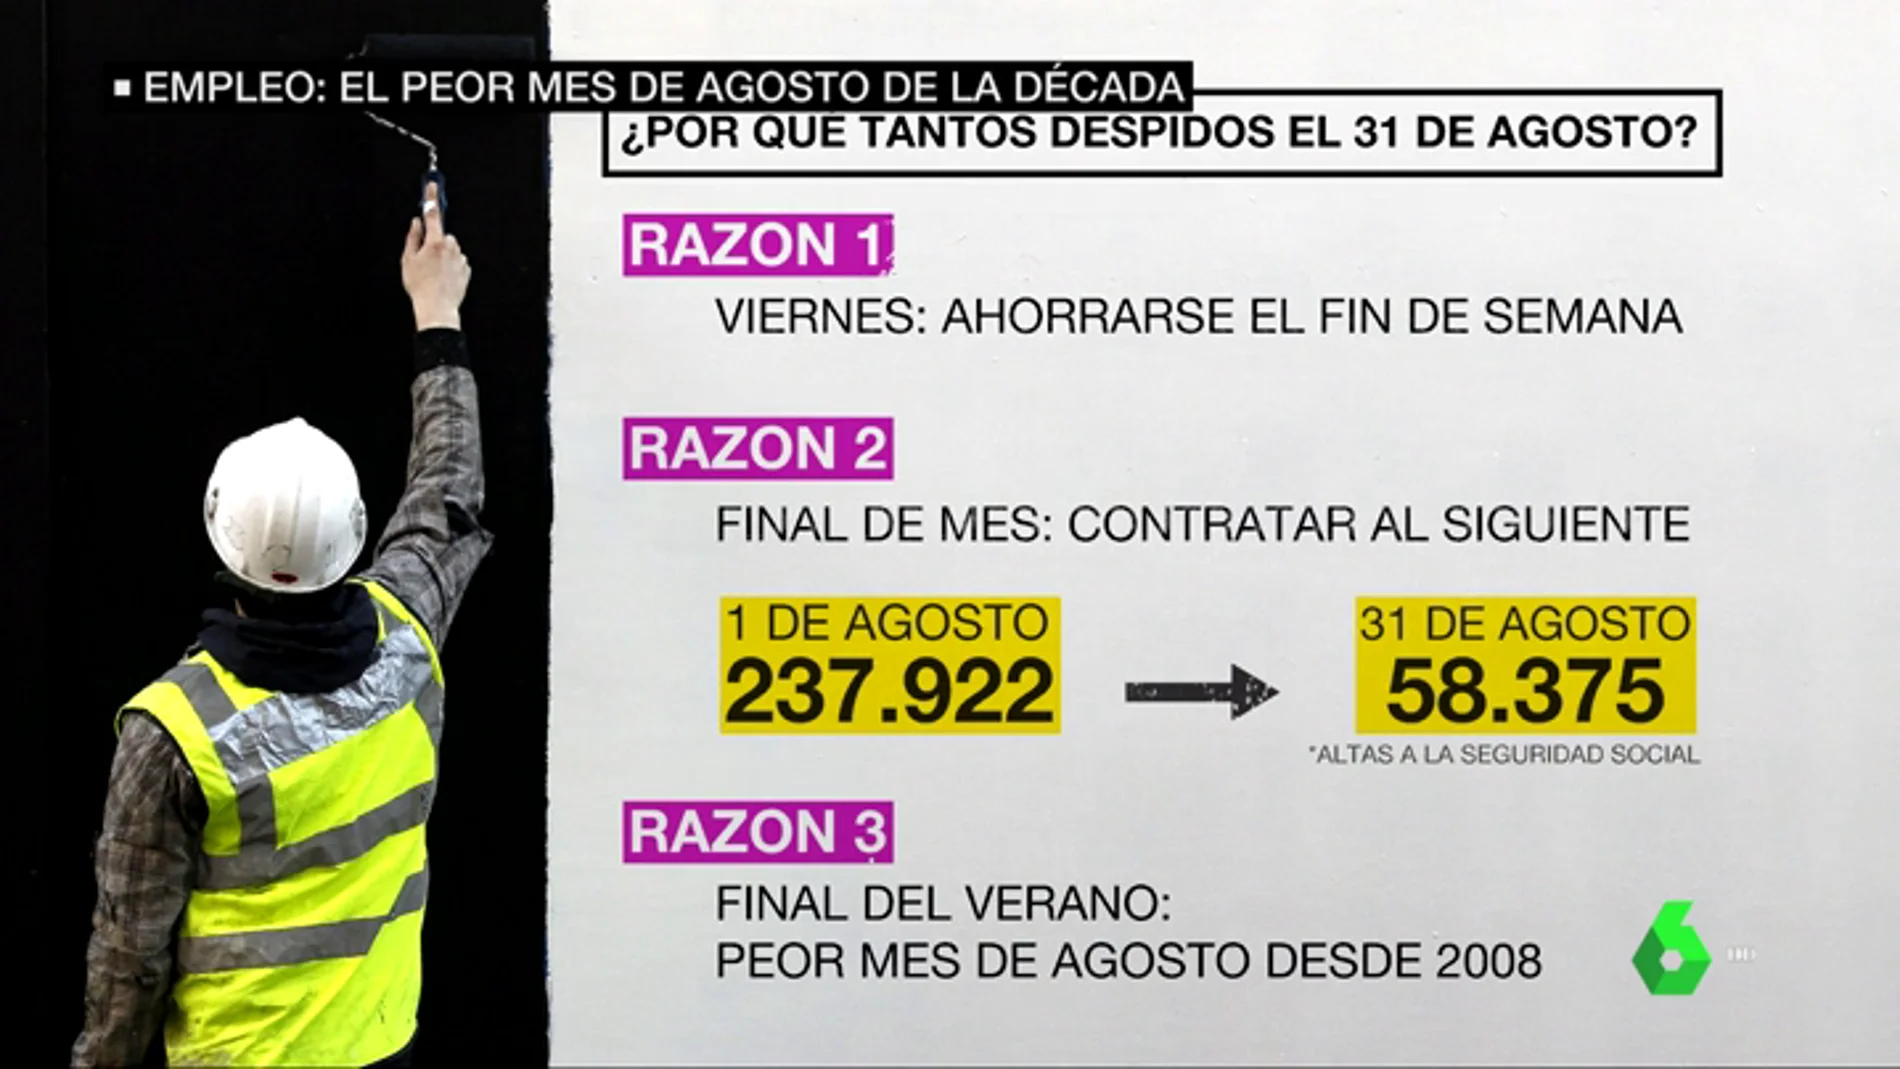 31 de agosto de 2018: el día que más empleo se destruyó en la historia de España